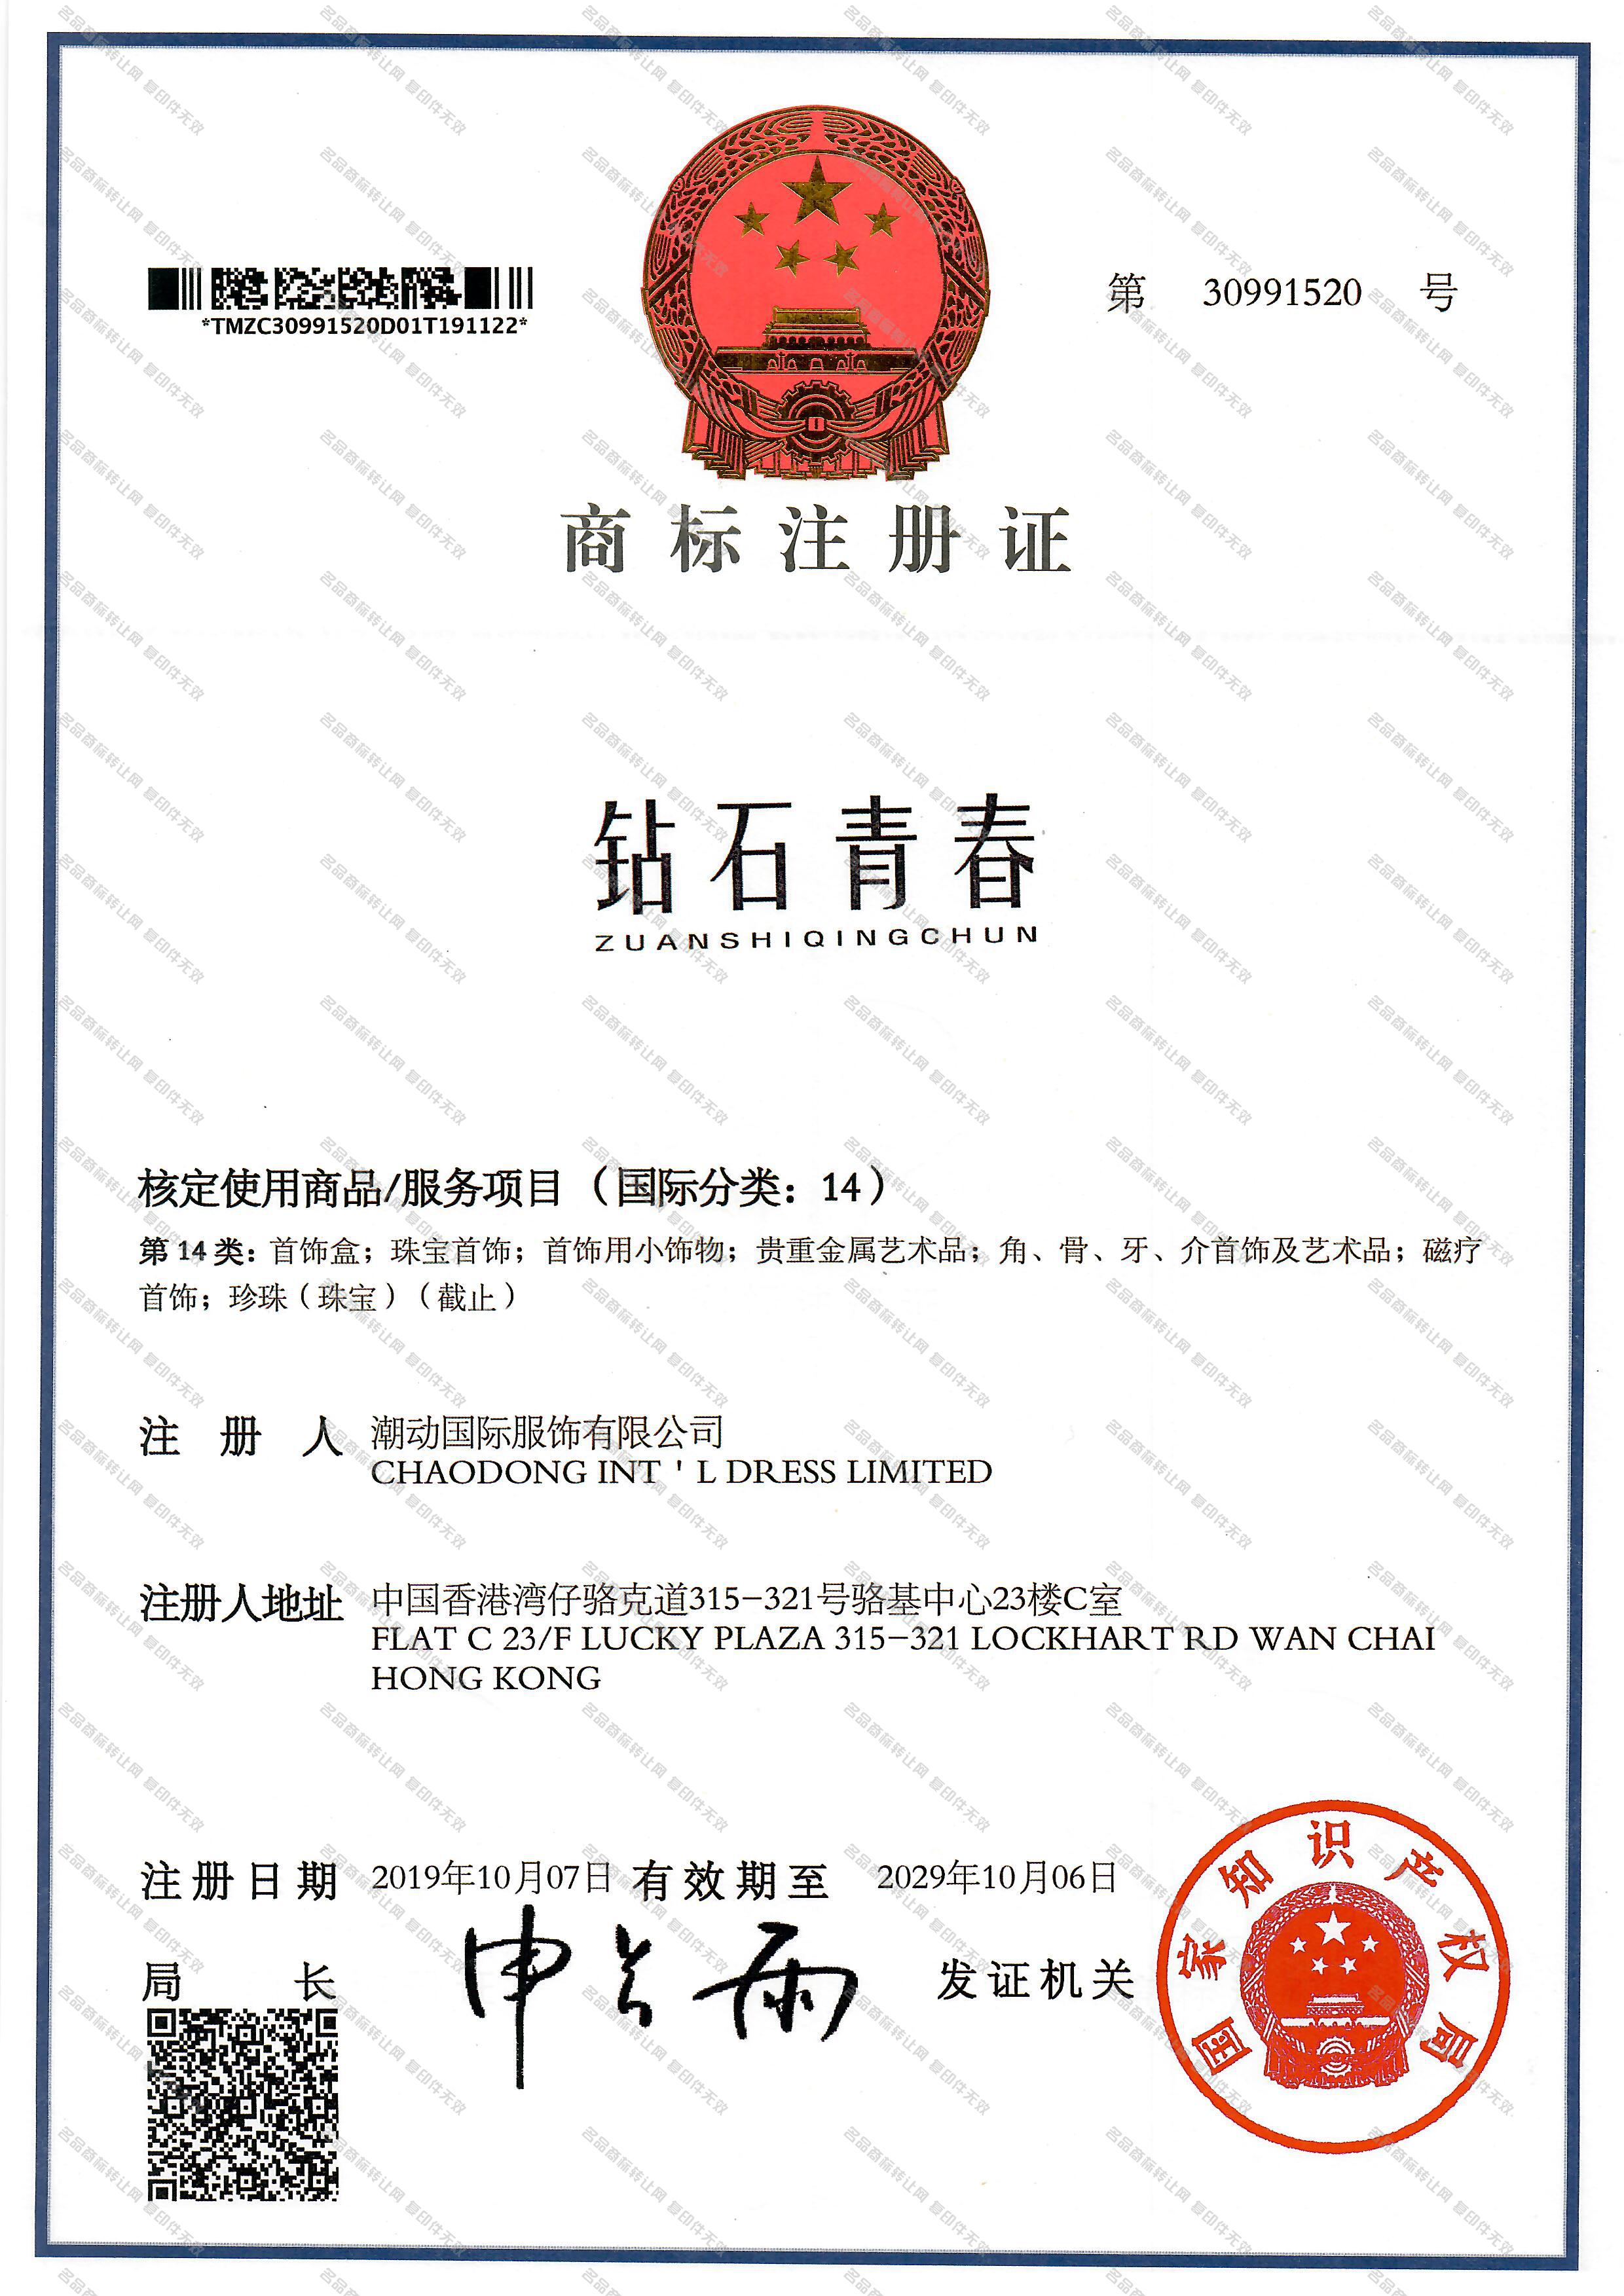 钻石青春 ZUANSHIQINGCHUN注册证